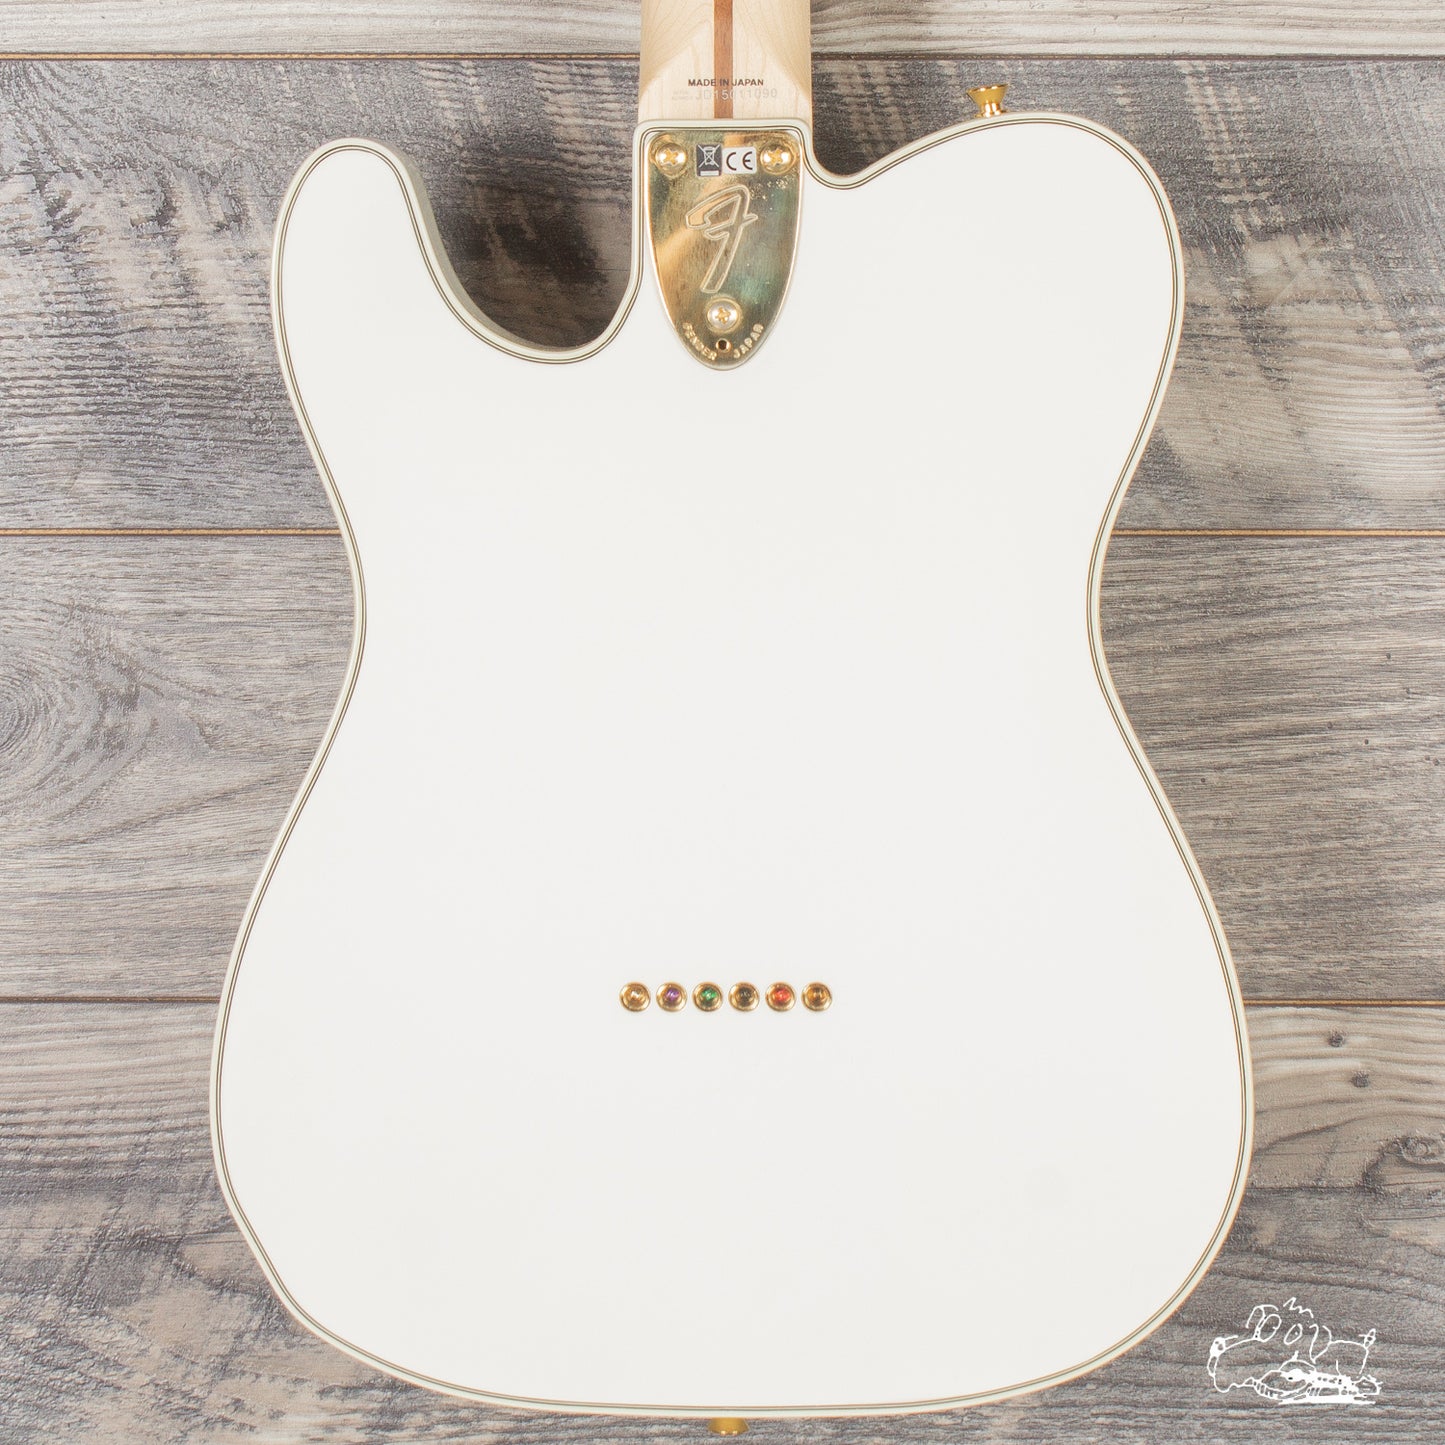 2015 Fender Telecaster Thinline